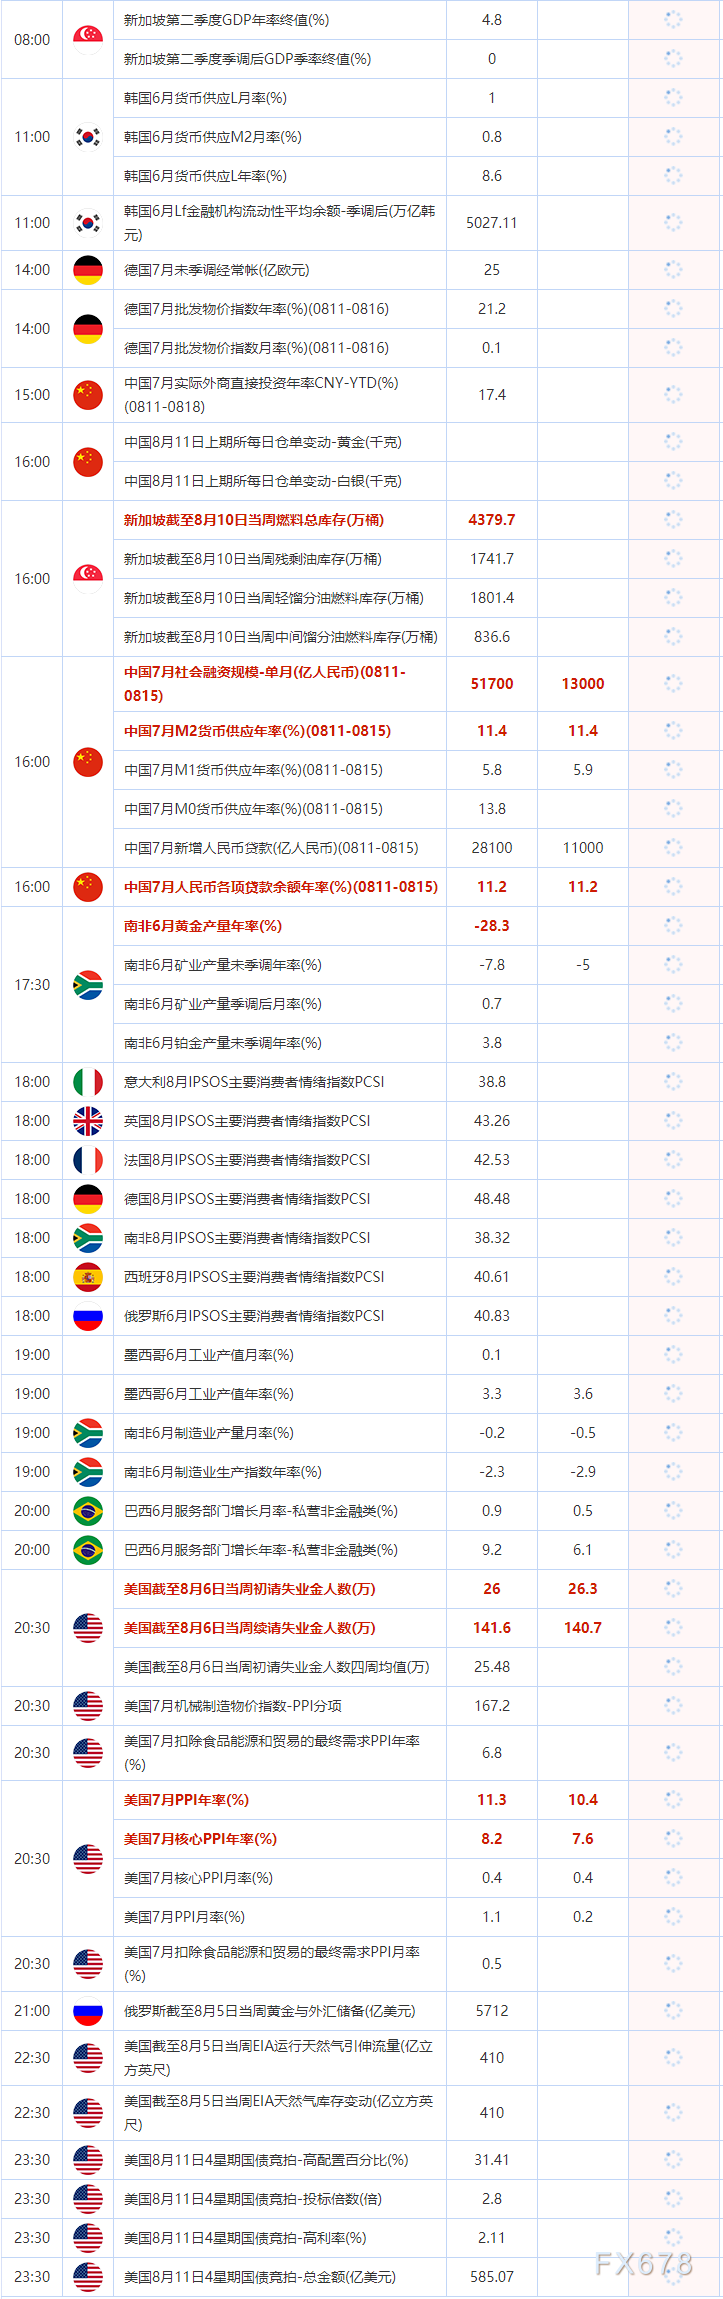  8:00   新加坡第二季度GDP年率终值(%) 前值： 4.8 8:00   新加坡第二季度季调后GDP季率终值(%) 前值： 0 11:00 韩国6月货币供应L月率(%) 前值： 1 11:00 韩国6月货币供应M2月率(%) 前值： 0.8 11:00 韩国6月货币供应L年率(%) 前值： 8.6 11:00 韩国6月Lf金融机构活动性均匀余额-季调后(万亿韩元) 前值： 5027.11 14:00 德国7月未季调经常帐(亿欧元) 前值： 25 14:00 德国7月批发物价指数年率(%)(0811-0816) 前值： 21.2 14:00 德国7月批发物价指数月率(%)(0811-0816) 前值： 0.1 15:00 中国7月实际外商间接投资年率CNY-YTD(%)(0811-0818) 前值： 17.4 16:00 中国7月社会融资规模-单月(亿人民币)(0811-0815) 前值： 51700 预期值： 13000 16:00 中国7月M2货币供应年率(%)(0811-0815) 前值： 11.4 预期值： 11.4 16:00 中国7月M1货币供应年率(%)(0811-0815) 前值： 5.8 预期值： 5.9 16:00 中国7月M0货币供应年率(%)(0811-0815) 前值： 13.8 预期值： 16:00 中国7月新增人民币贷款(亿人民币)(0811-0815) 前值： 28100 预期值： 11000 16:00 新加坡截至8月10日当周燃料总库存(万桶) 前值： 4379.7 16:00 新加坡截至8月10日当周轻馏分油燃料库存(万桶) 前值： 1801.4 16:00 新加坡截至8月10日当周中间馏分油燃料库存(万桶) 前值： 836.6 16:00 新加坡截至8月10日当周残剩油库存(万桶) 前值： 1741.7 16:00 中国8月11日上期所每日仓单变动-黄金(千克) 前值： 16:00 中国8月11日上期所每日仓单变动-白银(千克) 前值： 16:00 中国7月人民币各项贷款余额年率(%)(0811-0815) 前值： 11.2 预期值： 11.2 17:30 南非6月黄金产量年率(%) 前值： -28.3 17:30 南非6月矿业产量季调后月率(%) 前值： 0.7 17:30 南非6月铂金产量未季调年率(%) 前值： 3.8 17:30 南非6月矿业产量未季调年率(%) 前值： -7.8 预期值： -5 18:00 南非8月IPSOS主要出产者情绪指数PCSI 前值： 38.32 18:00 西班牙8月IPSOS主要出产者情绪指数PCSI 前值： 40.61 18:00 俄罗斯6月IPSOS主要出产者情绪指数PCSI 前值： 40.83 18:00 意大利8月IPSOS主要出产者情绪指数PCSI 前值： 38.8 18:00 英国8月IPSOS主要出产者情绪指数PCSI 前值： 43.26 18:00 法国8月IPSOS主要出产者情绪指数PCSI 前值： 42.53 18:00 德国8月IPSOS主要出产者情绪指数PCSI 前值： 48.48 19:00 墨西哥6月工业产值月率(%) 前值： 0.1 19:00 墨西哥6月工业产值年率(%) 前值： 3.3 预期值： 3.6 19:00 南非6月制造业产量月率(%) 前值： -0.2 预期值： -0.5 19:00 南非6月制造业消费指数年率(%) 前值： -2.3 预期值： -2.9 20:00 巴西6月效劳部门增长月率-私营非金融类(%) 前值： 0.9 预期值： 0.5 20:00 巴西6月效劳部门增长年率-私营非金融类(%) 前值： 9.2 预期值： 6.1 20:30 美国7月扣除食品能源和贸易的最终需求PPI月率(%) 前值： 0.5 20:30 美国7月PPI年率(%) 前值： 11.3 预期值： 10.4 20:30 美国7月核心PPI月率(%) 前值： 0.4 预期值： 0.4 20:30 美国7月PPI月率(%) 前值： 1.1 预期值： 0.2 20:30 美国7月核心PPI年率(%) 前值： 8.2 预期值： 7.6 20:30 美国截至8月6日当周初请失业金人数(万) 前值： 26 预期值： 26.3 20:30 美国截至8月6日当周续请失业金人数(万) 前值： 141.6 预期值： 140.7 20:30 美国截至8月6日当周初请失业金人数周围均值(万) 前值： 25.48 20:30 美国7月机械制造物价指数-PPI分项 前值： 167.2 20:30 美国7月扣除食品能源和贸易的最终需求PPI年率(%) 前值： 6.8 21:00 俄罗斯截至8月5日当周黄金与外汇储蓄(亿美圆) 前值： 5712 22:30 美国截至8月5日当周EIA运行天然气引伸流量(亿立方英尺) 前值： 410 22:30 美国截至8月5日当周EIA天然气库存变动(亿立方英尺) 前值： 410 23:30 美国8月11日4星期国债竞拍-高配置百分比(%) 前值： 31.41 23:30 美国8月11日4星期国债竞拍-投标倍数(倍) 前值： 2.8 23:30 美国8月11日4星期国债竞拍-高利率(%) 前值： 2.11 23:30 美国8月11日4星期国债竞拍-总金额(亿美圆) 前值： 585.07 后续及时更新的财历数据请存眷：【8月11日财经日历】